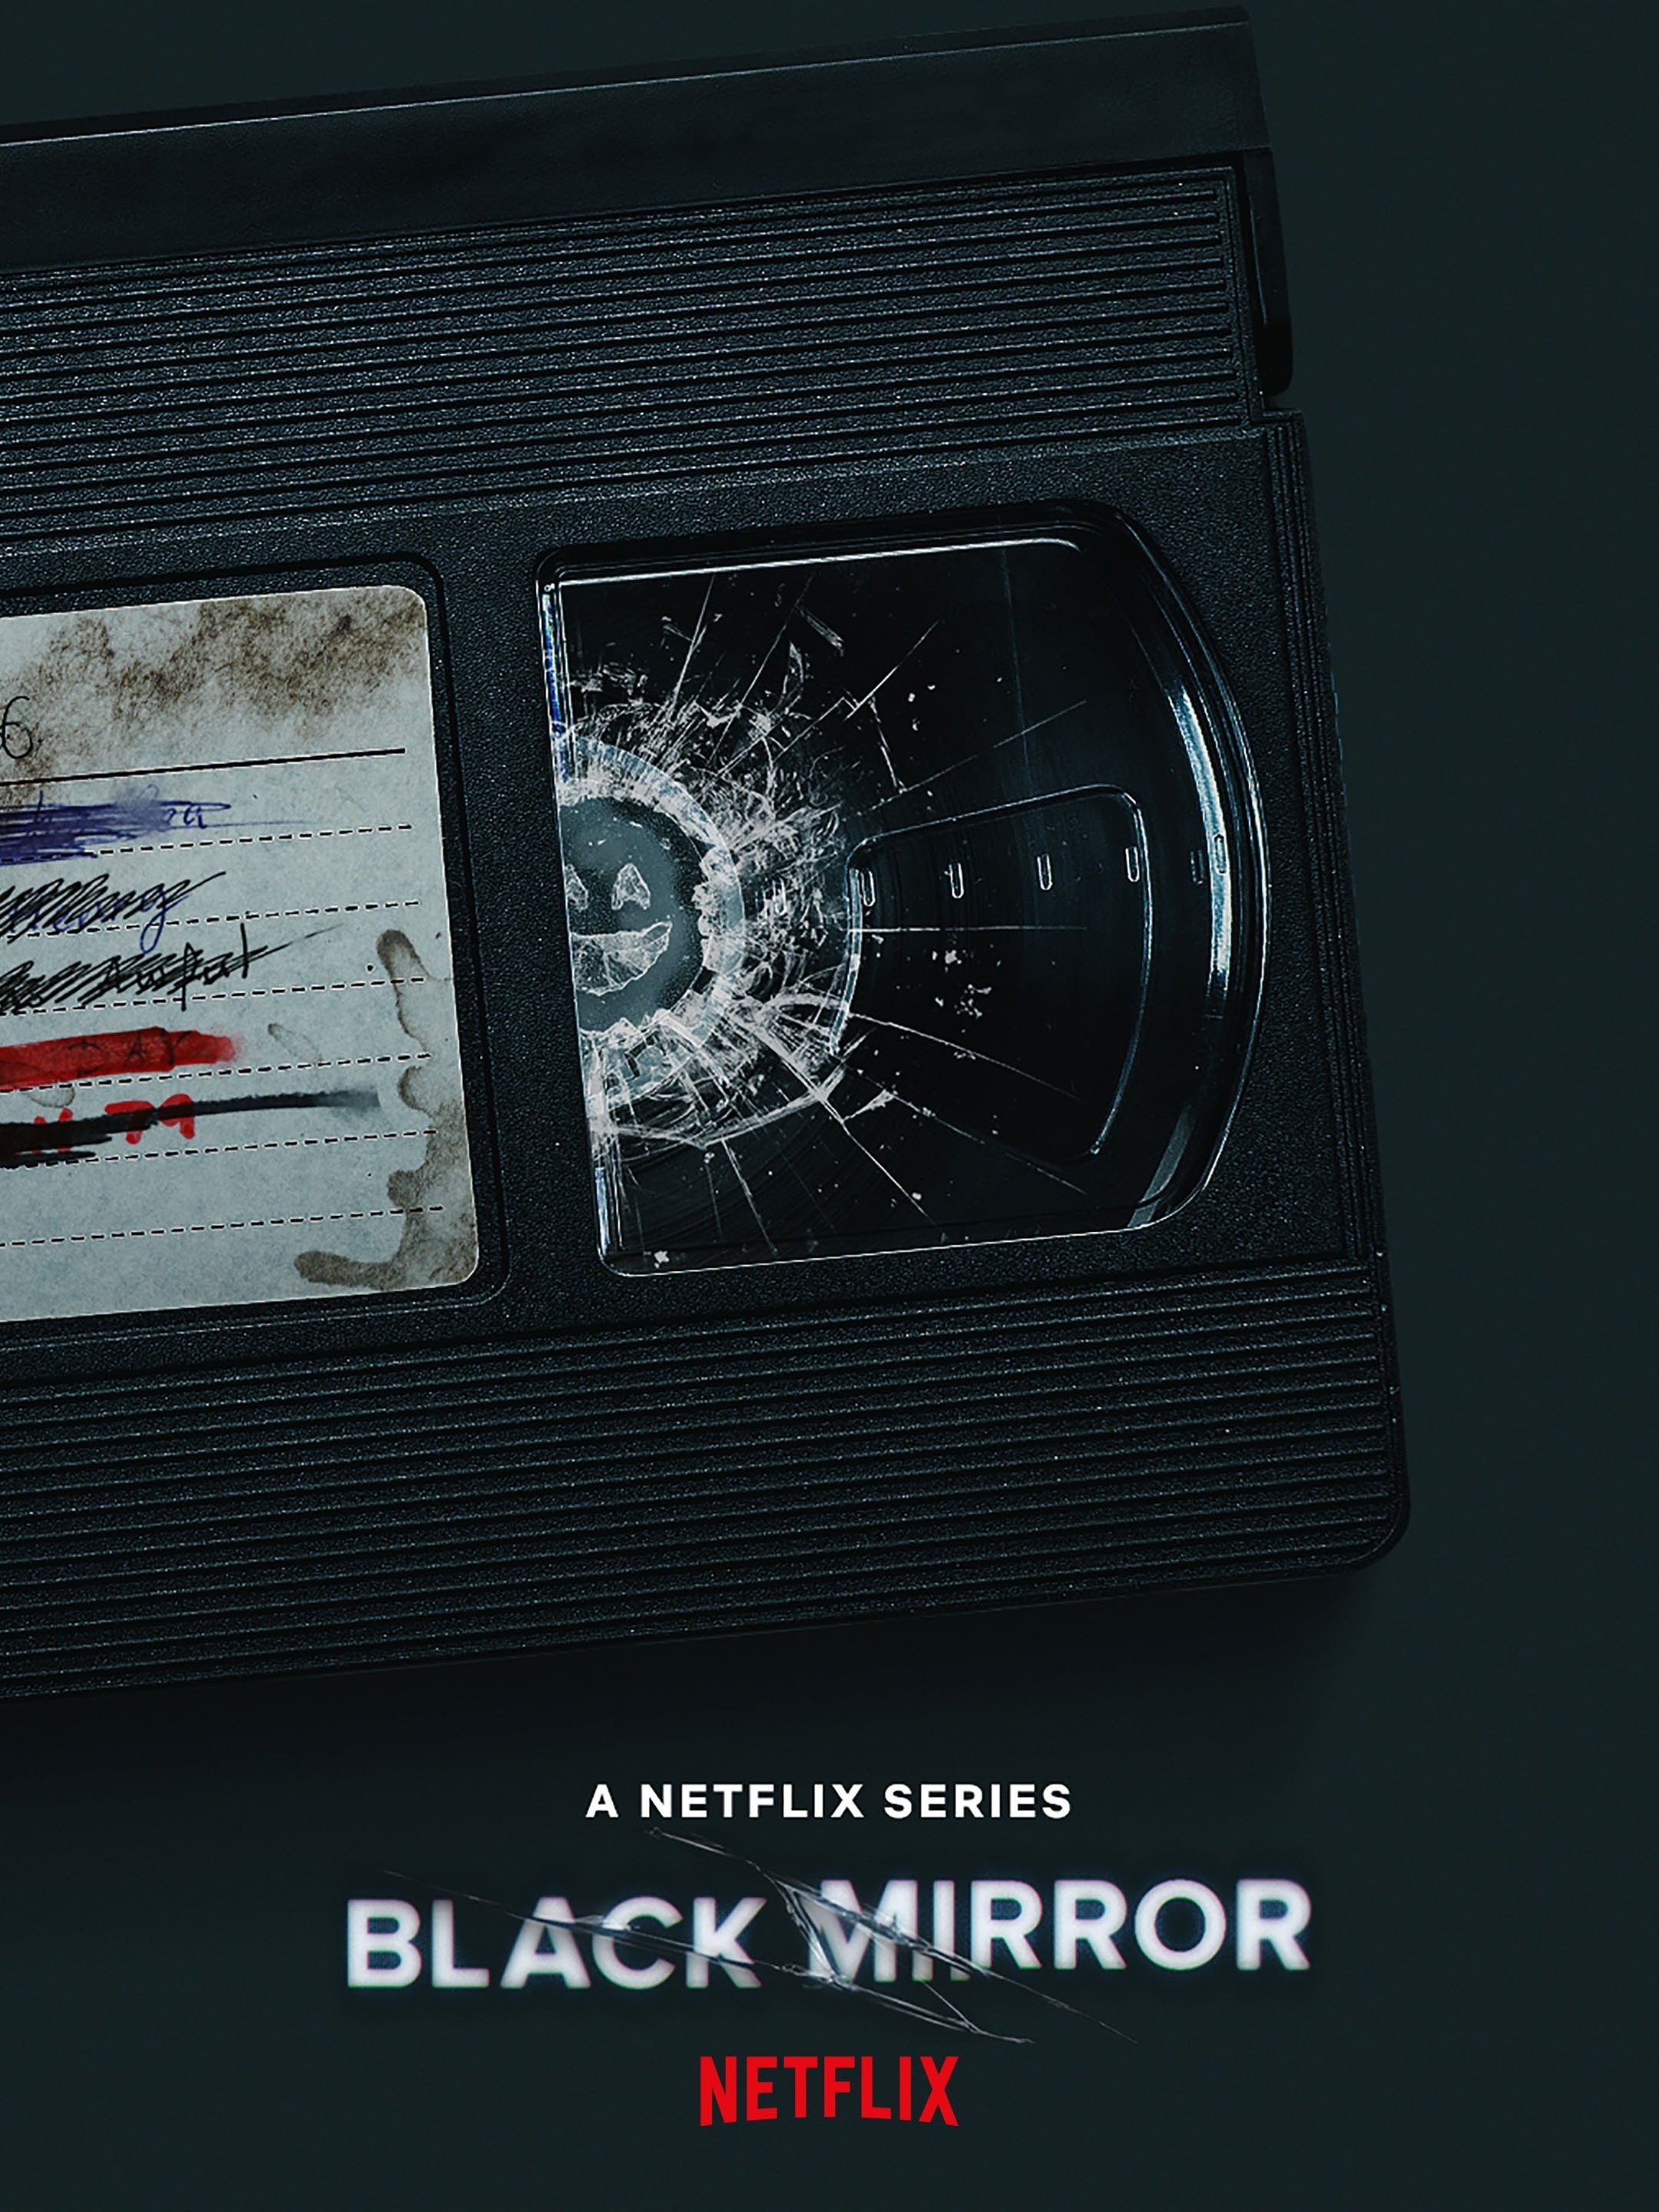 Black Mirror: Bandersnatch Streaming: Watch & Stream Online via Netflix